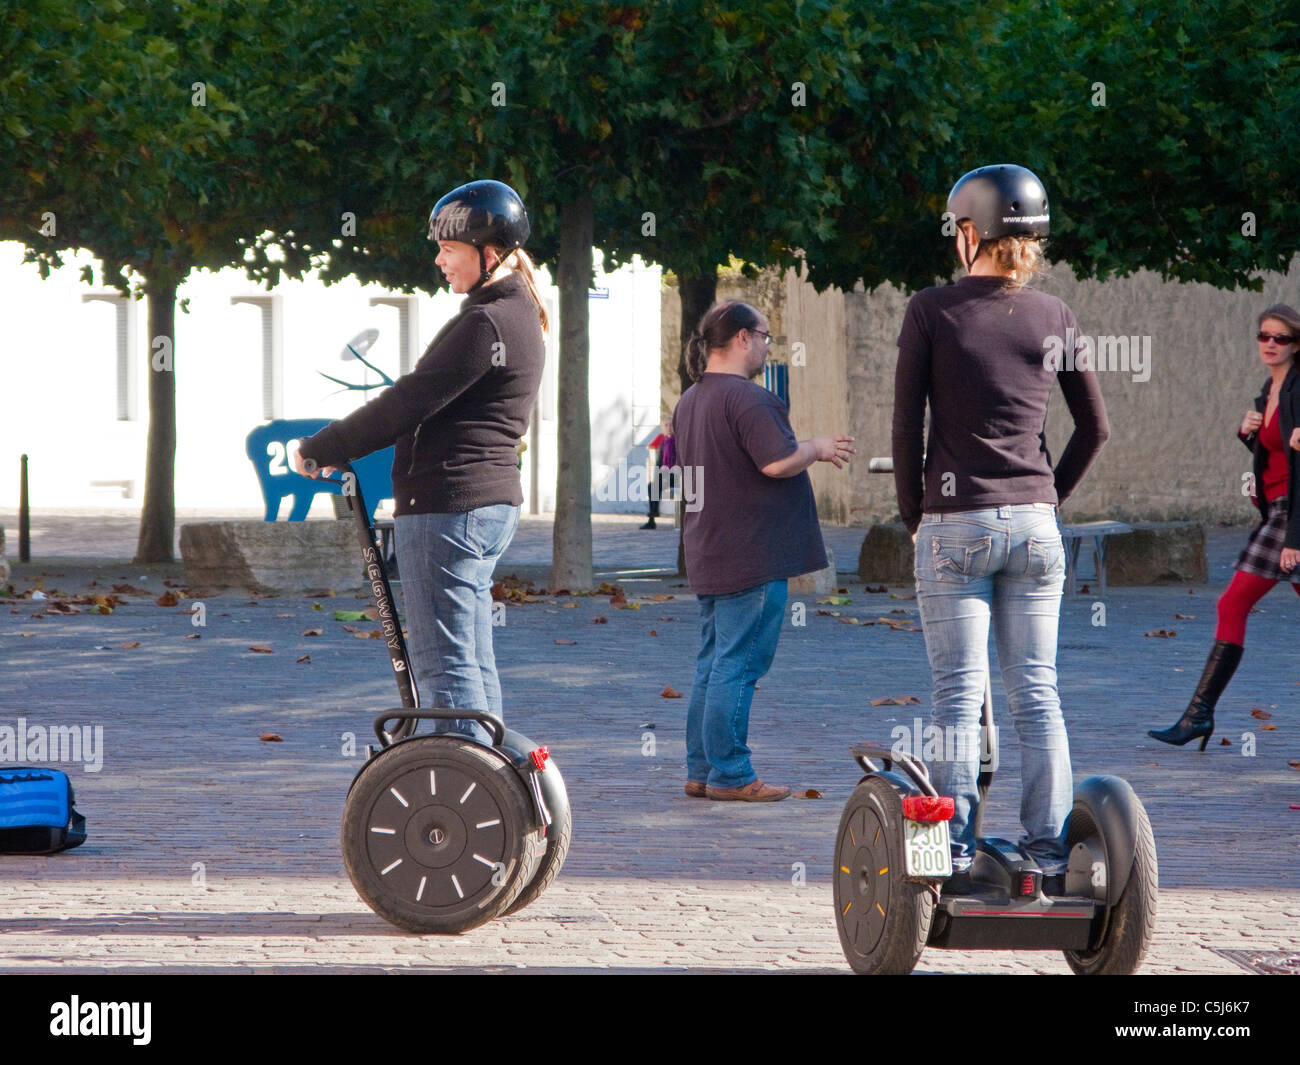 Segwayfahrer, Segway PT ist eine Erfindung von Dean Kamen, Segway, group of young people, Trier Stock Photo